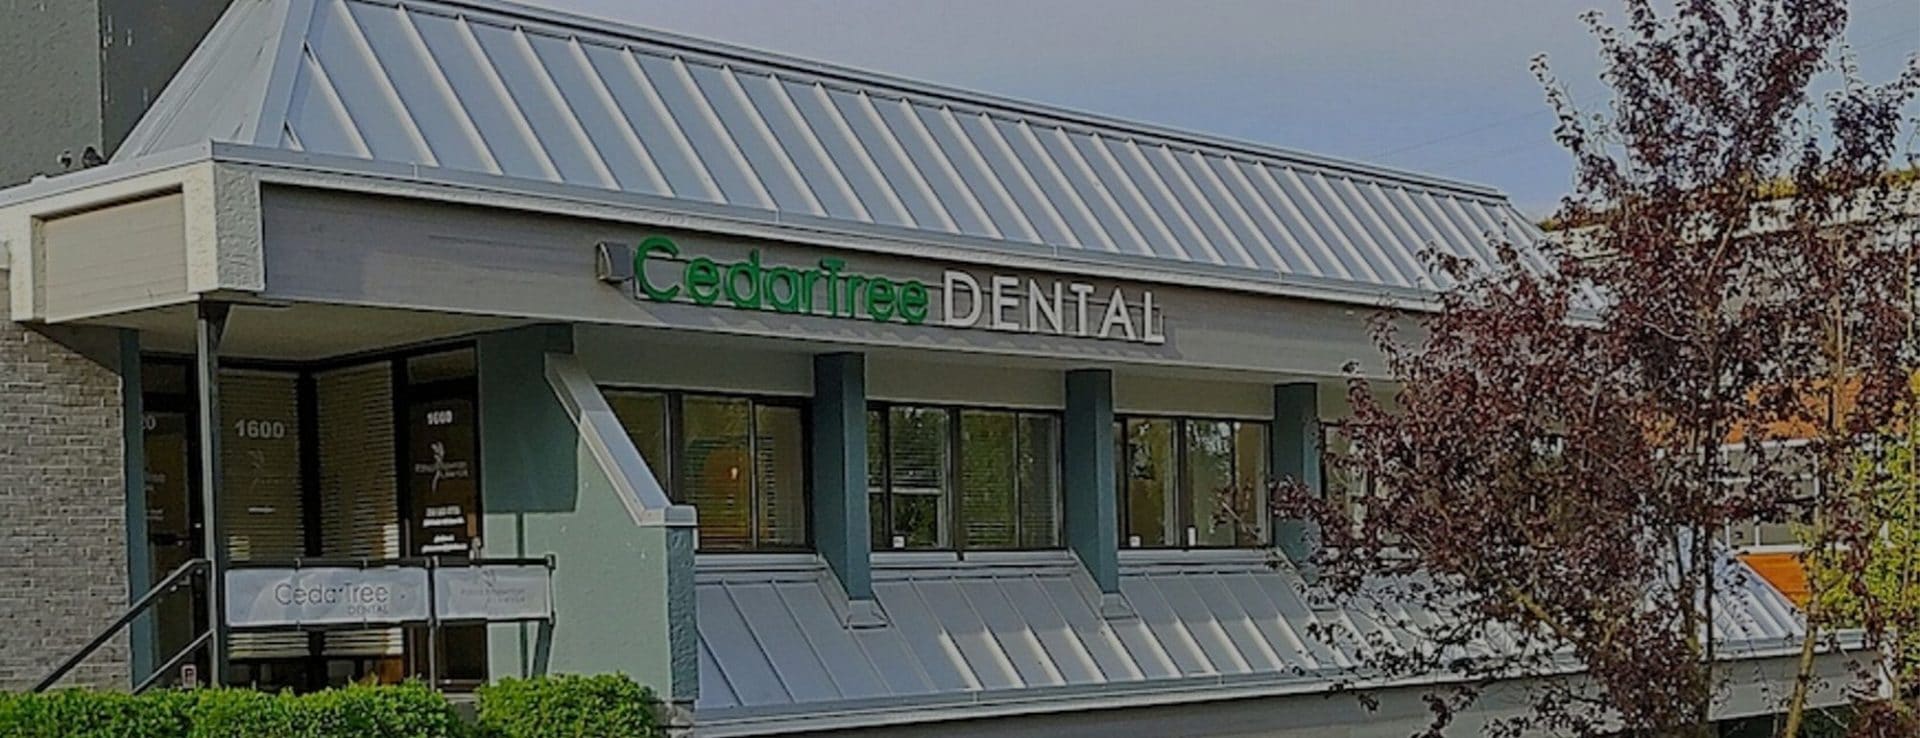  Cedar Tree Dental Rear